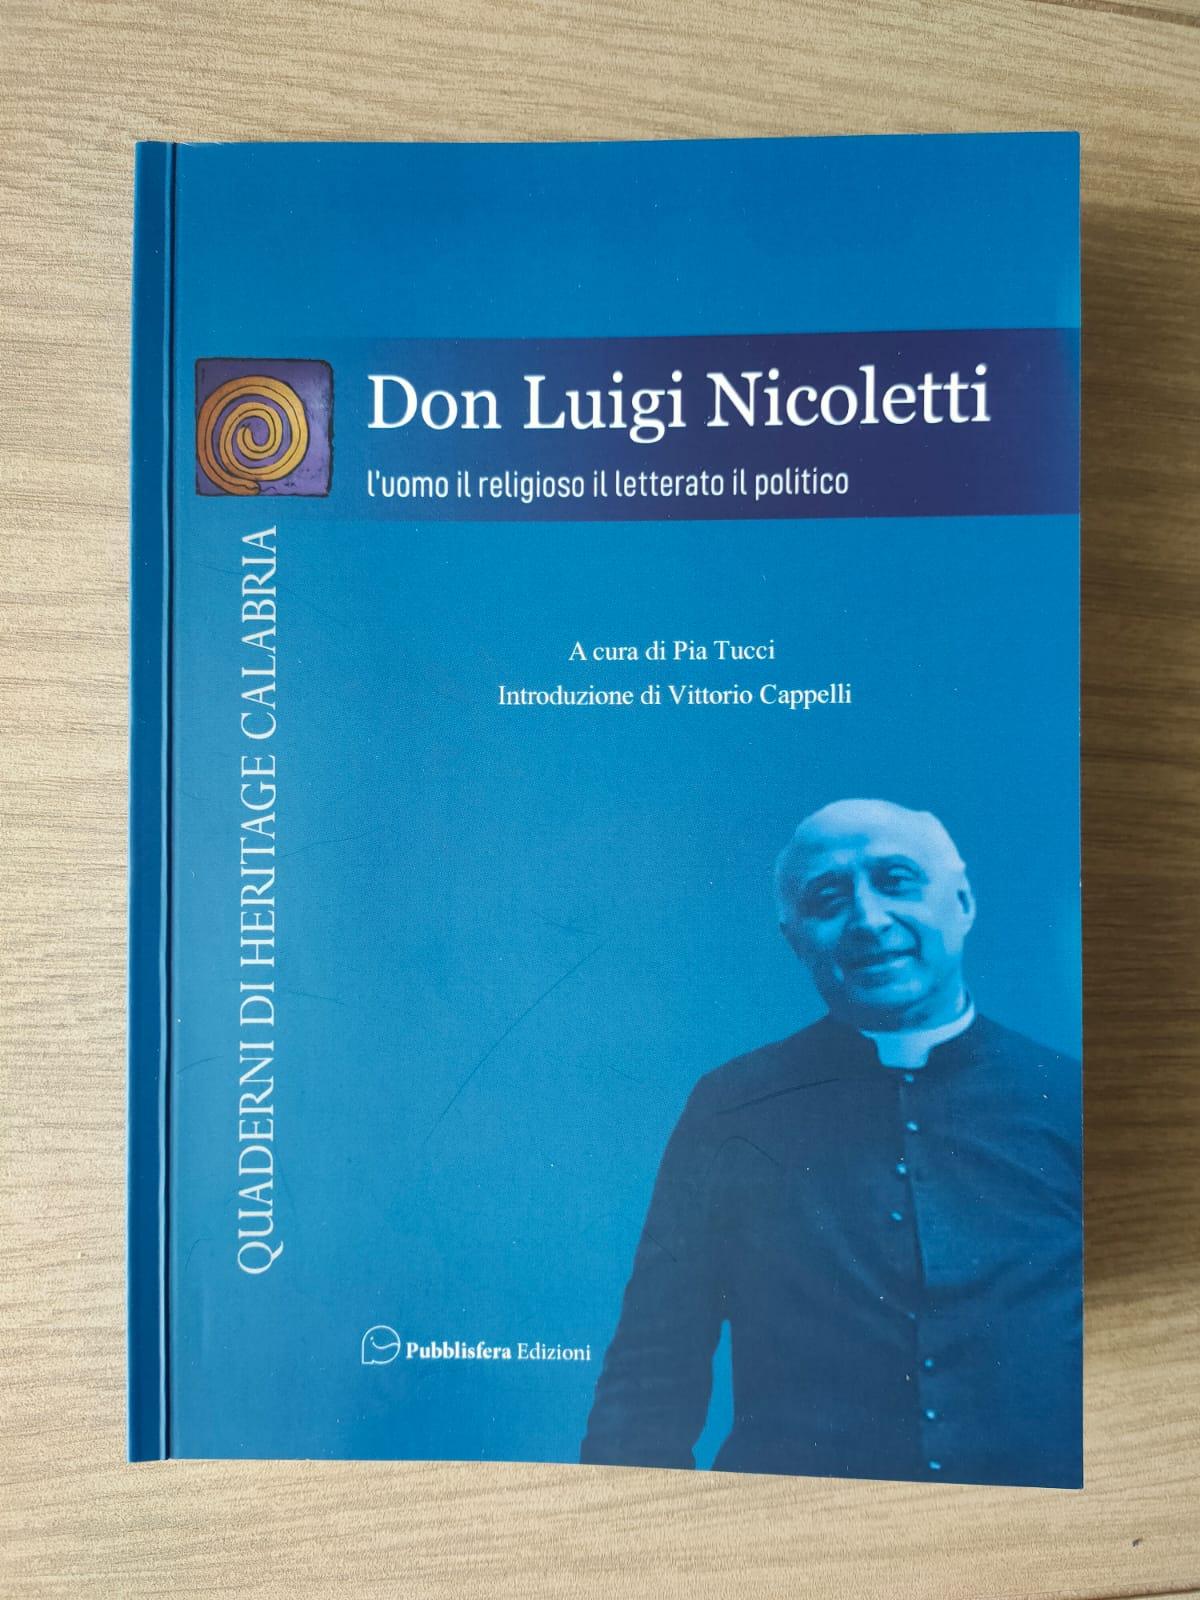 Recensione al volume “Don Luigi Nicoletti. L’uomo, il religioso, il letterato, il politico”